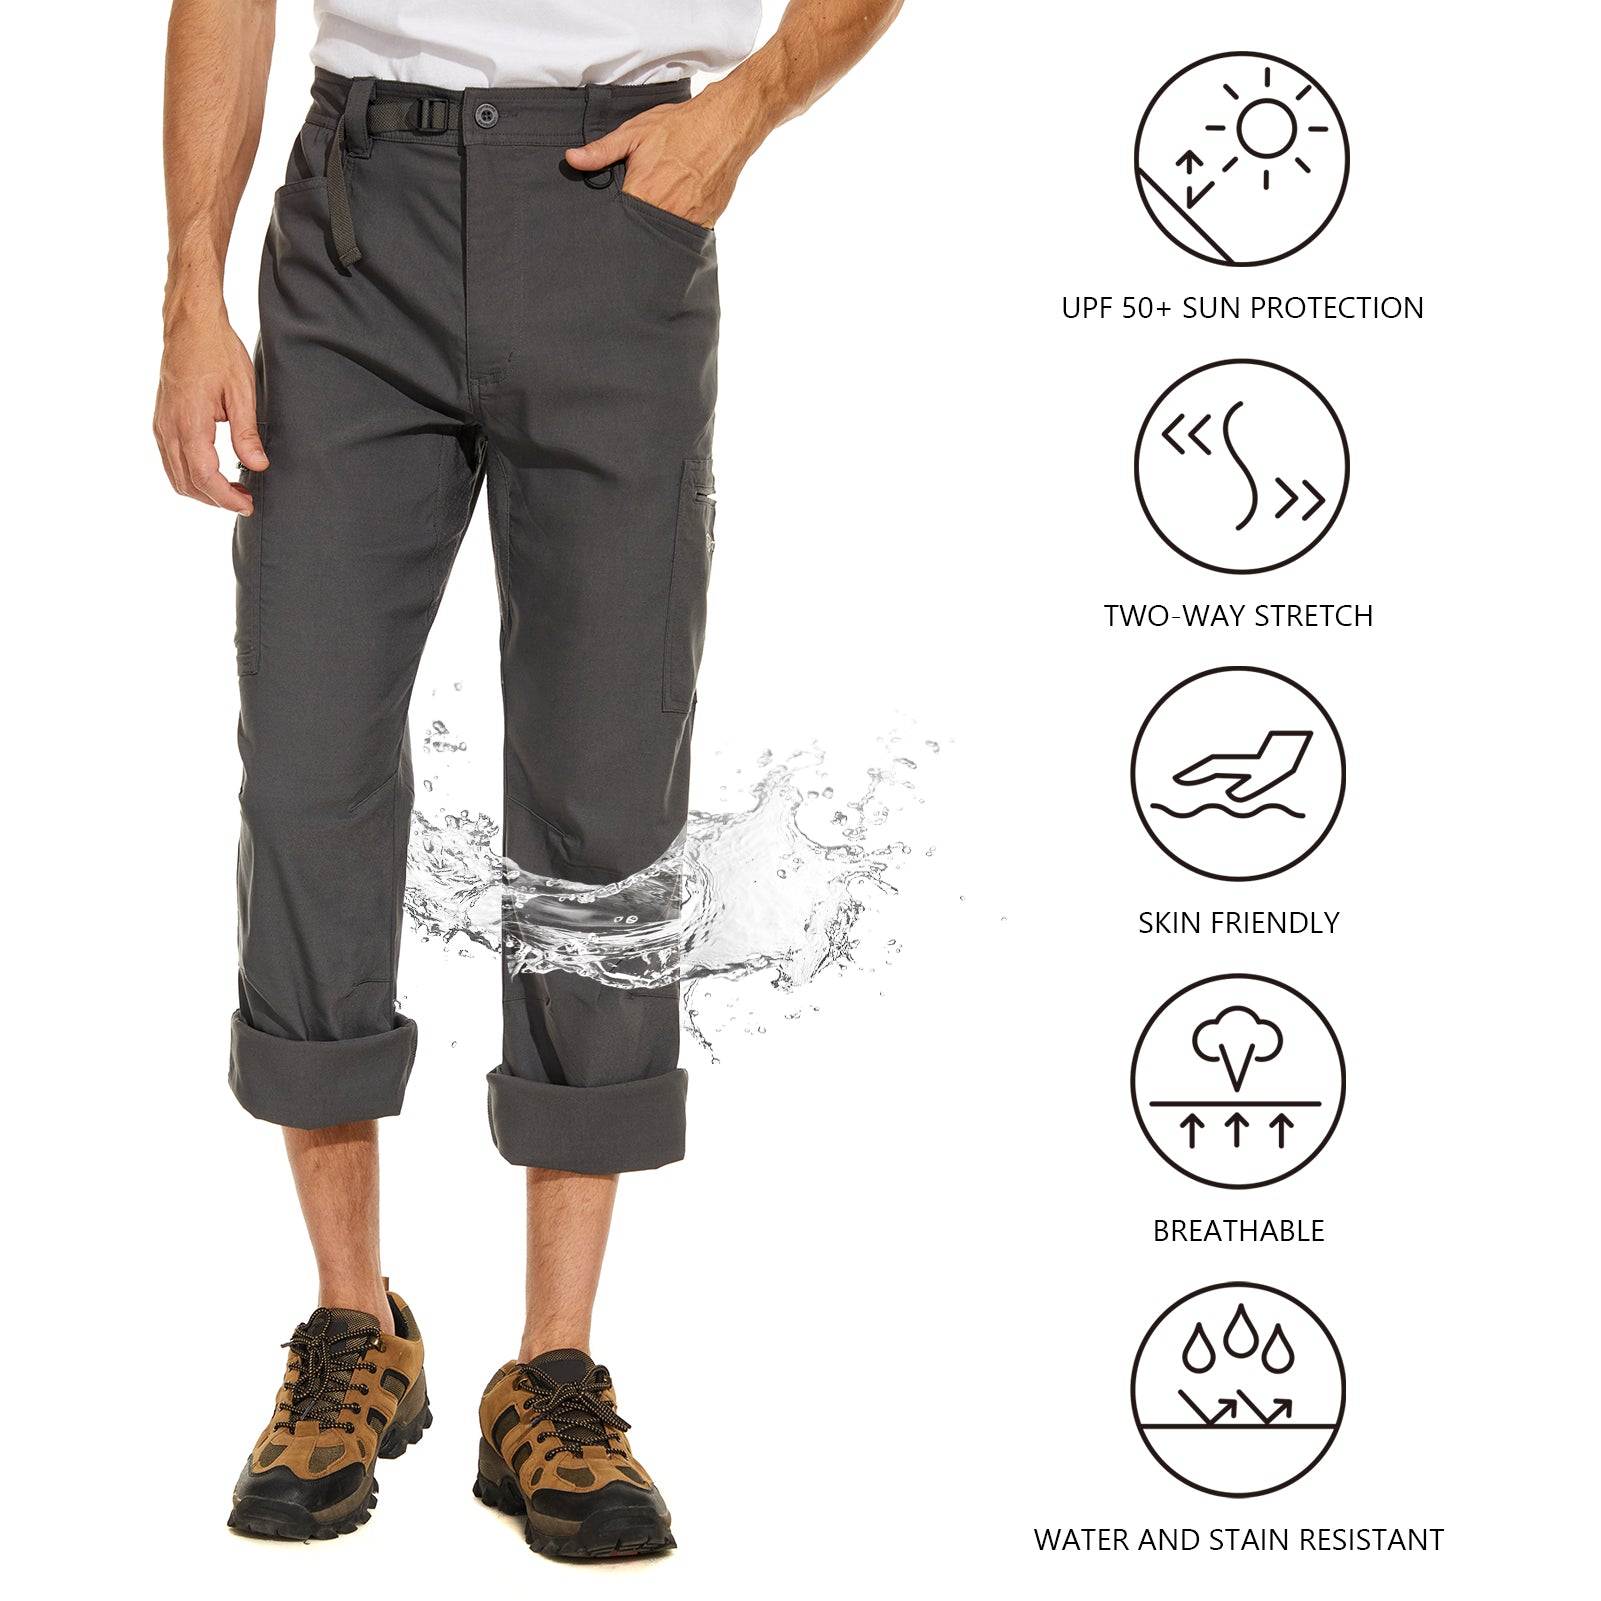 Men's Merino Wool Base Layer 3/4 Pants Orange - Xtm Europe